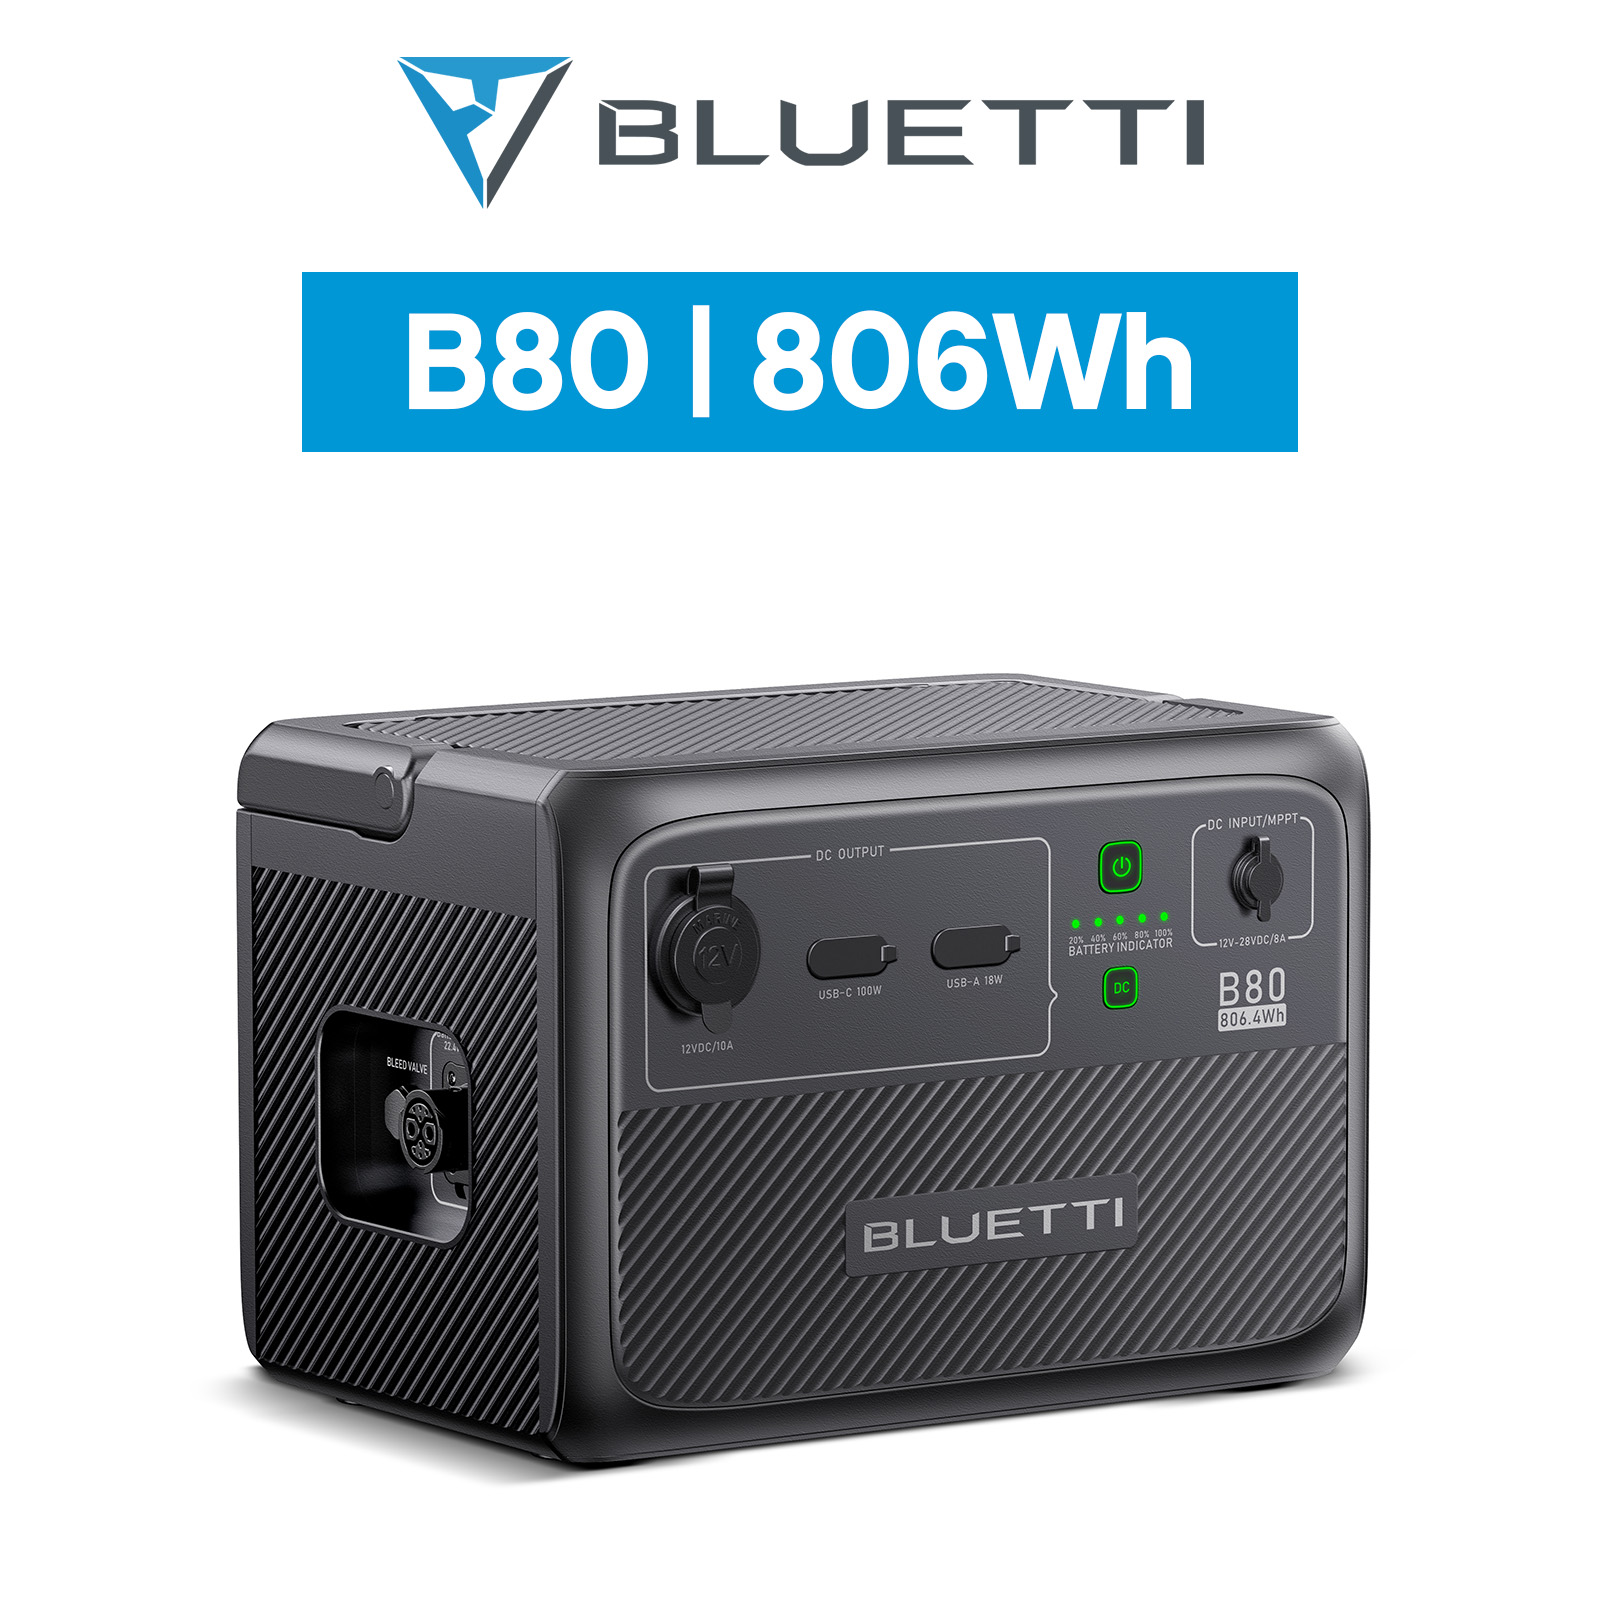 BLUETTI ポータブル電源 B80 拡張バッテリー 806Wh IP65防塵防水 6年保証 軽量 小型 蓄電池 リン酸鉄 長寿命 アウトドア キャンプ 防災 非常用電源